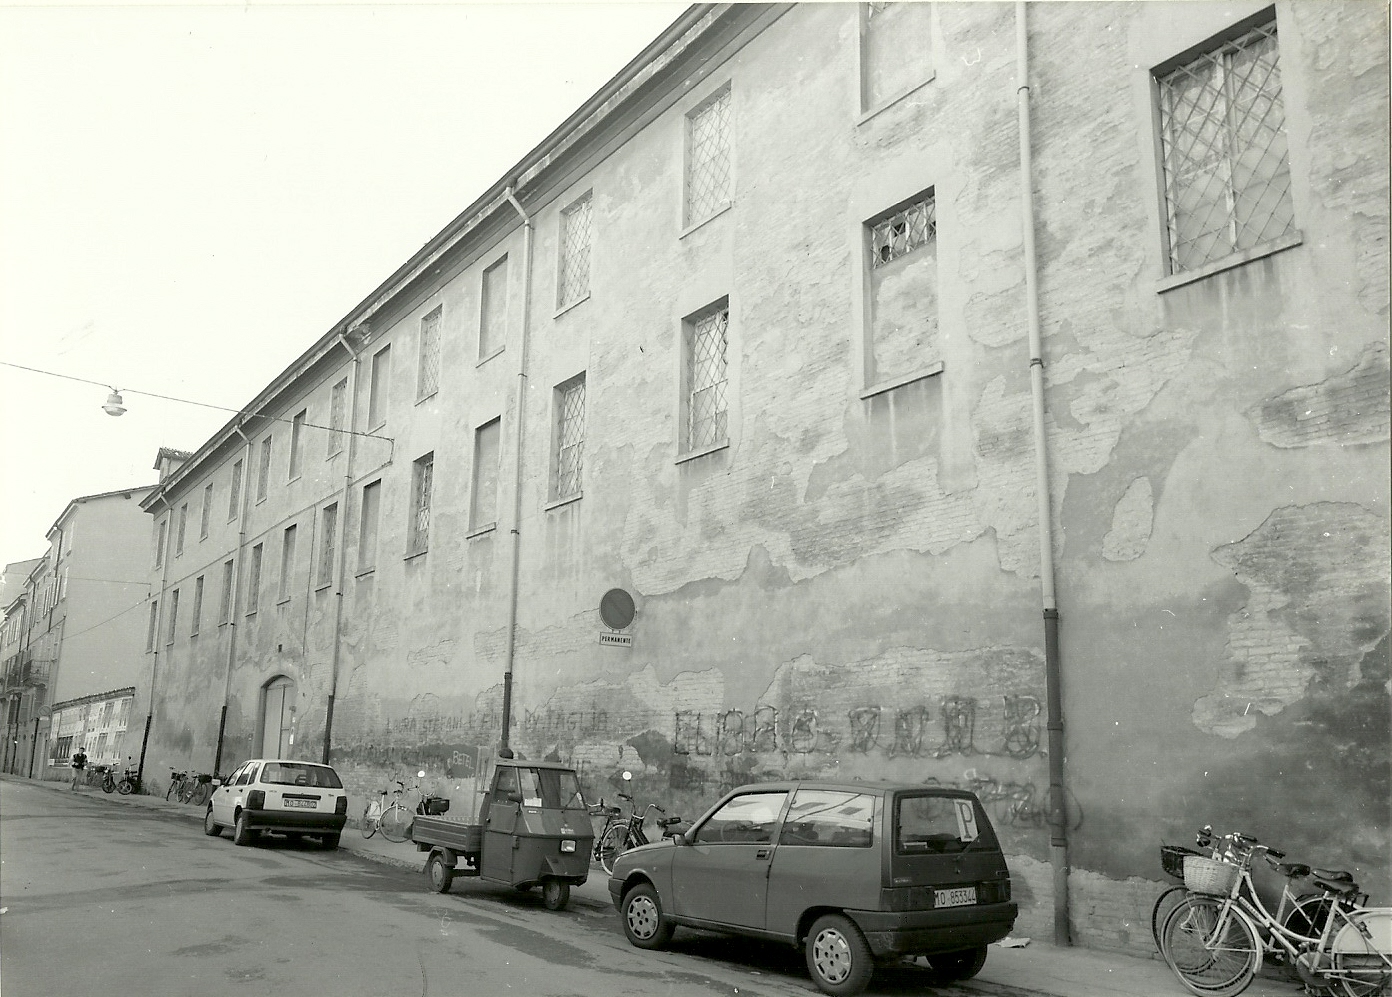 Convento delle suore Orsoline (convento) - Modena (MO) 